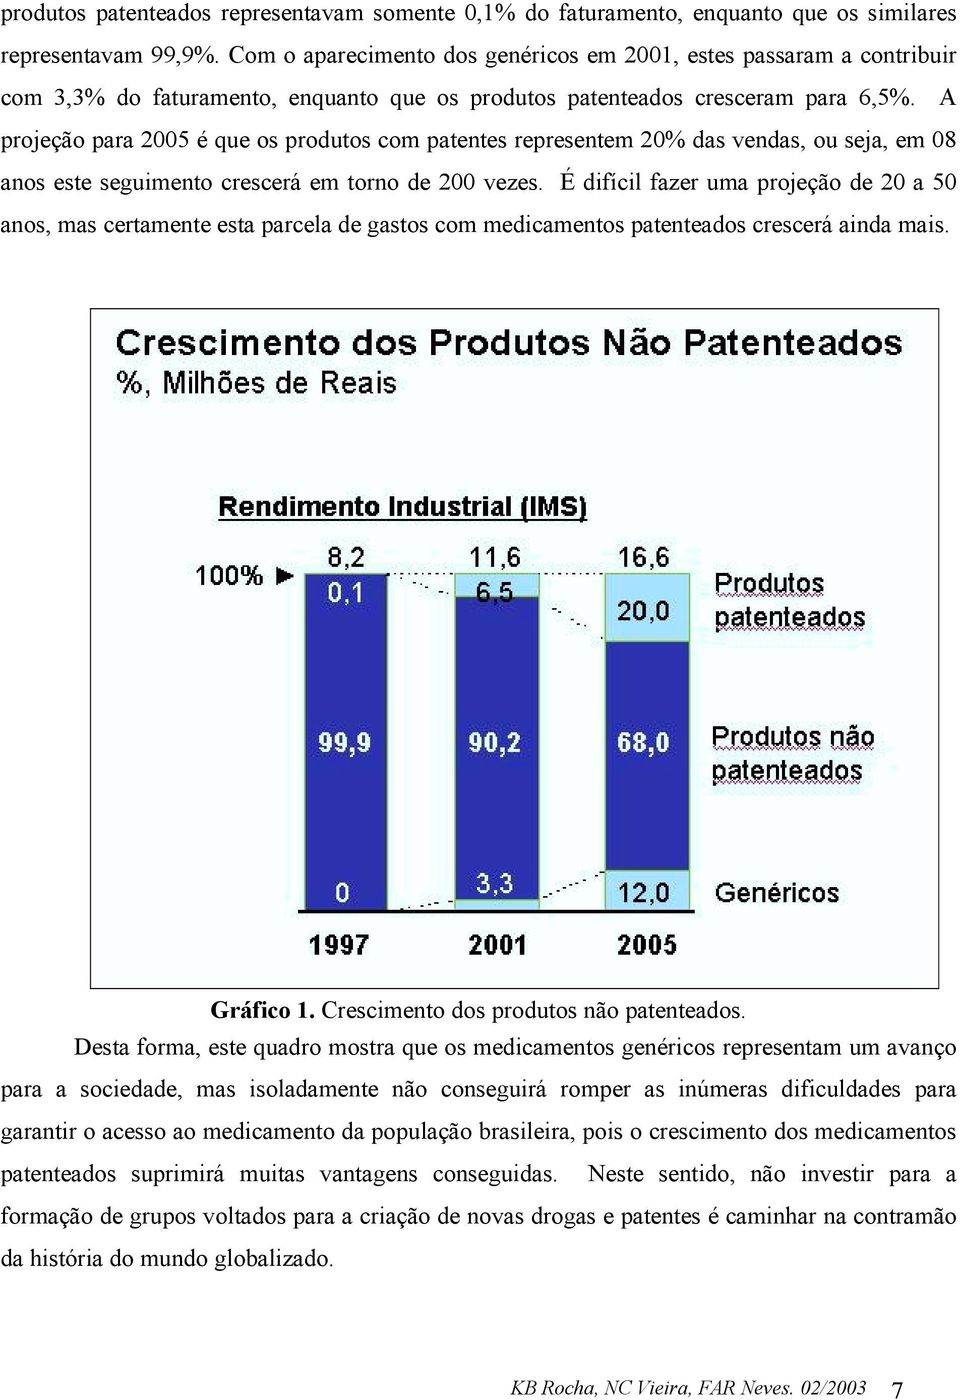 A projeção para 2005 é que os produtos com patentes representem 20% das vendas, ou seja, em 08 anos este seguimento crescerá em torno de 200 vezes.